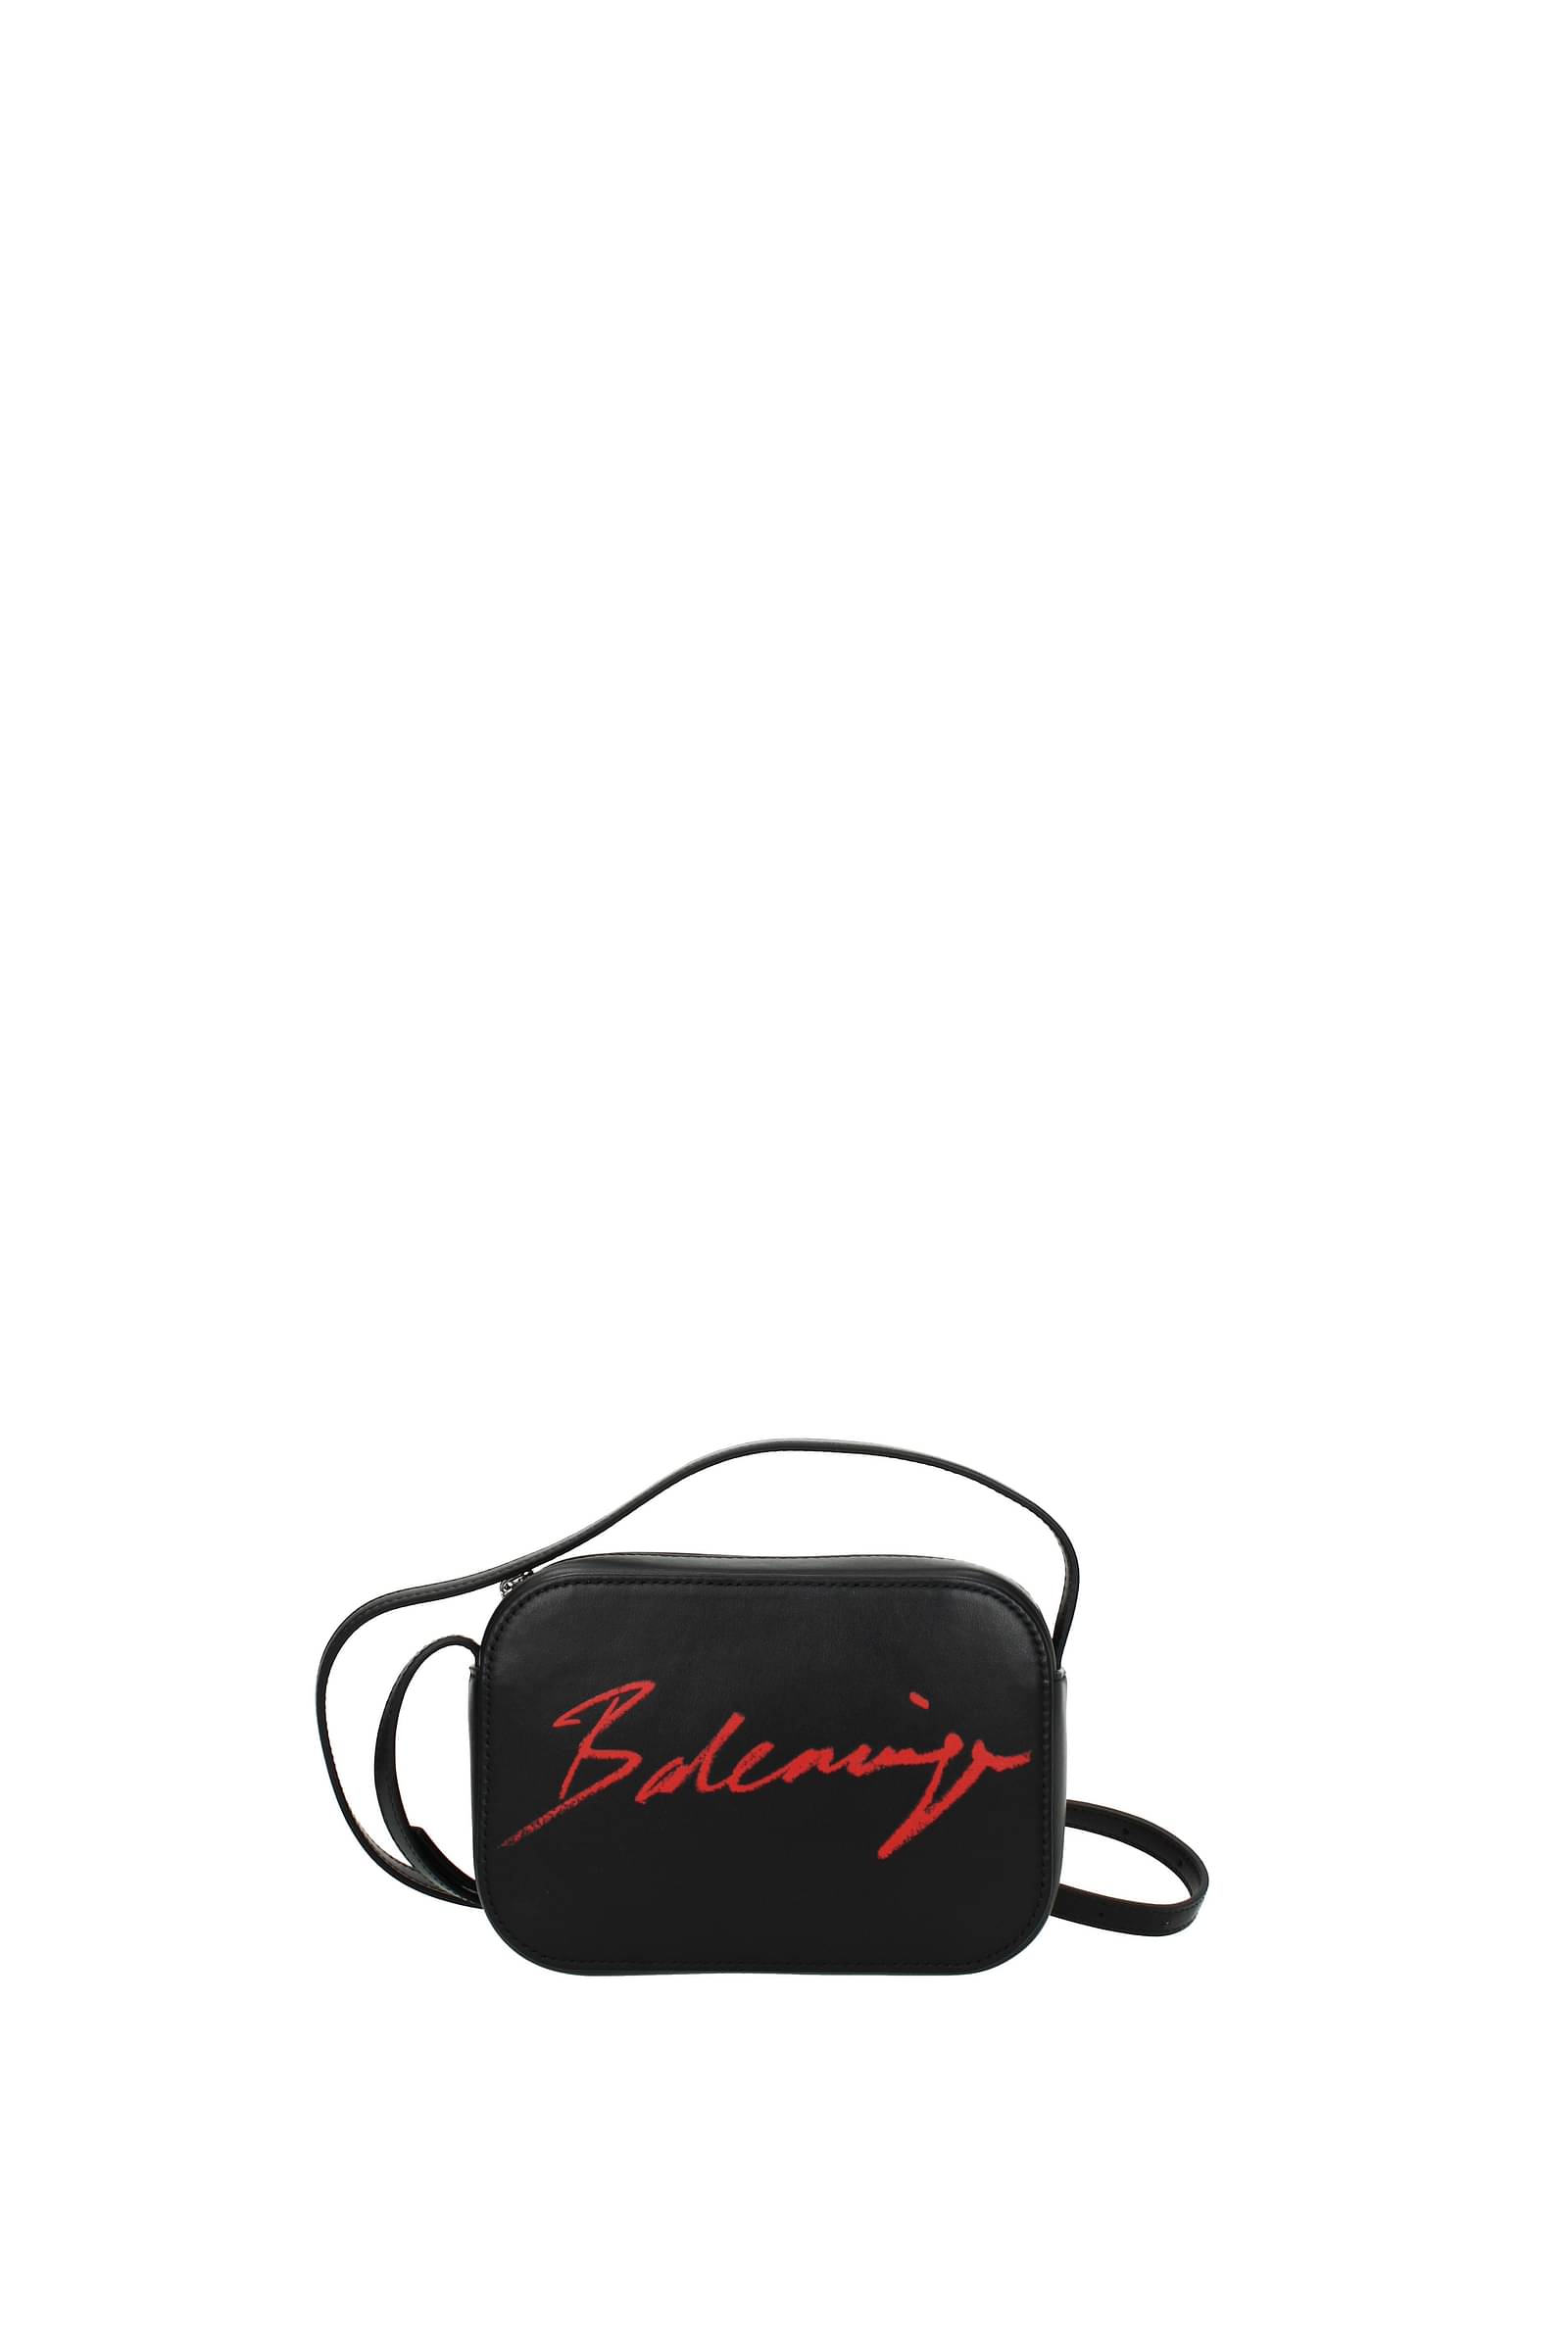 Balenciaga Sharp XS Bag  Tín đồ hàng hiệu